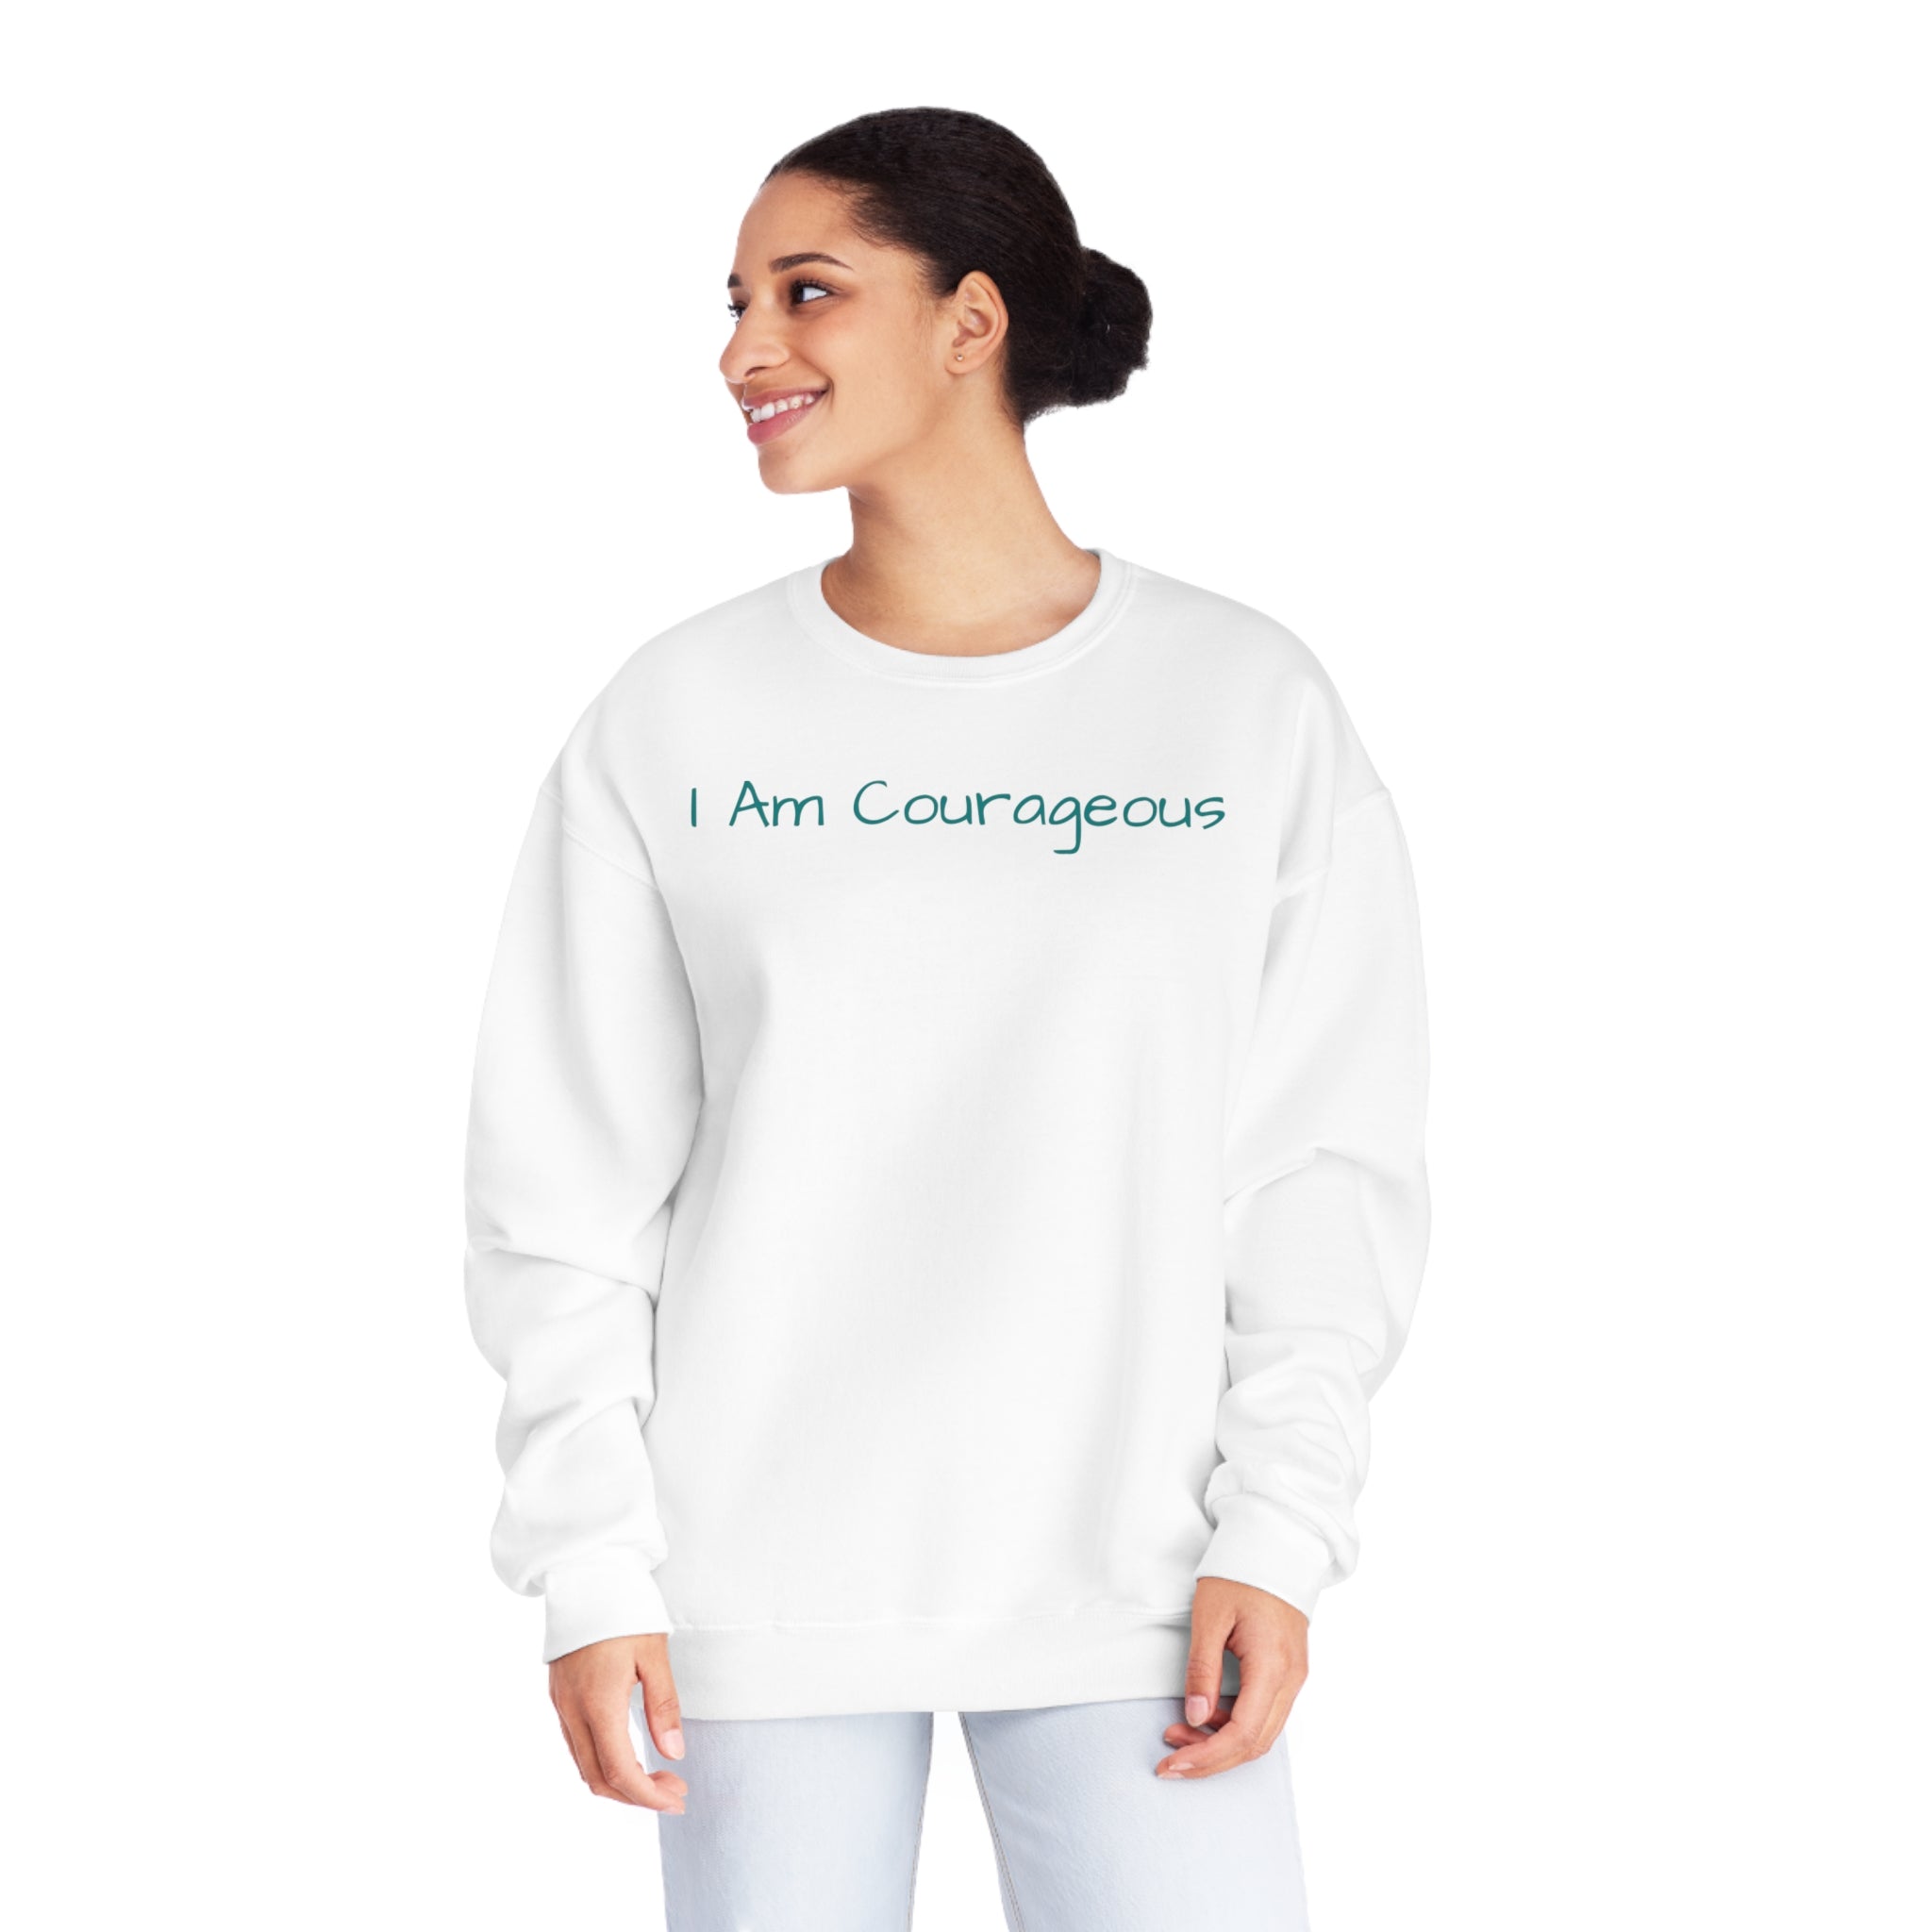 I Am Courageous Fleece: Comfort & Empowerment Sandstone Comfy Sweater Cozy Sweatshirt Crewneck Sweatshirt Fleece Pullover Graphic Sweatshirt Men's Sweatshirt Streatwear Sweatshirt Warm Outerwear Women's Sweatshirt Sweatshirt 8949652486250415051_2048 Printify